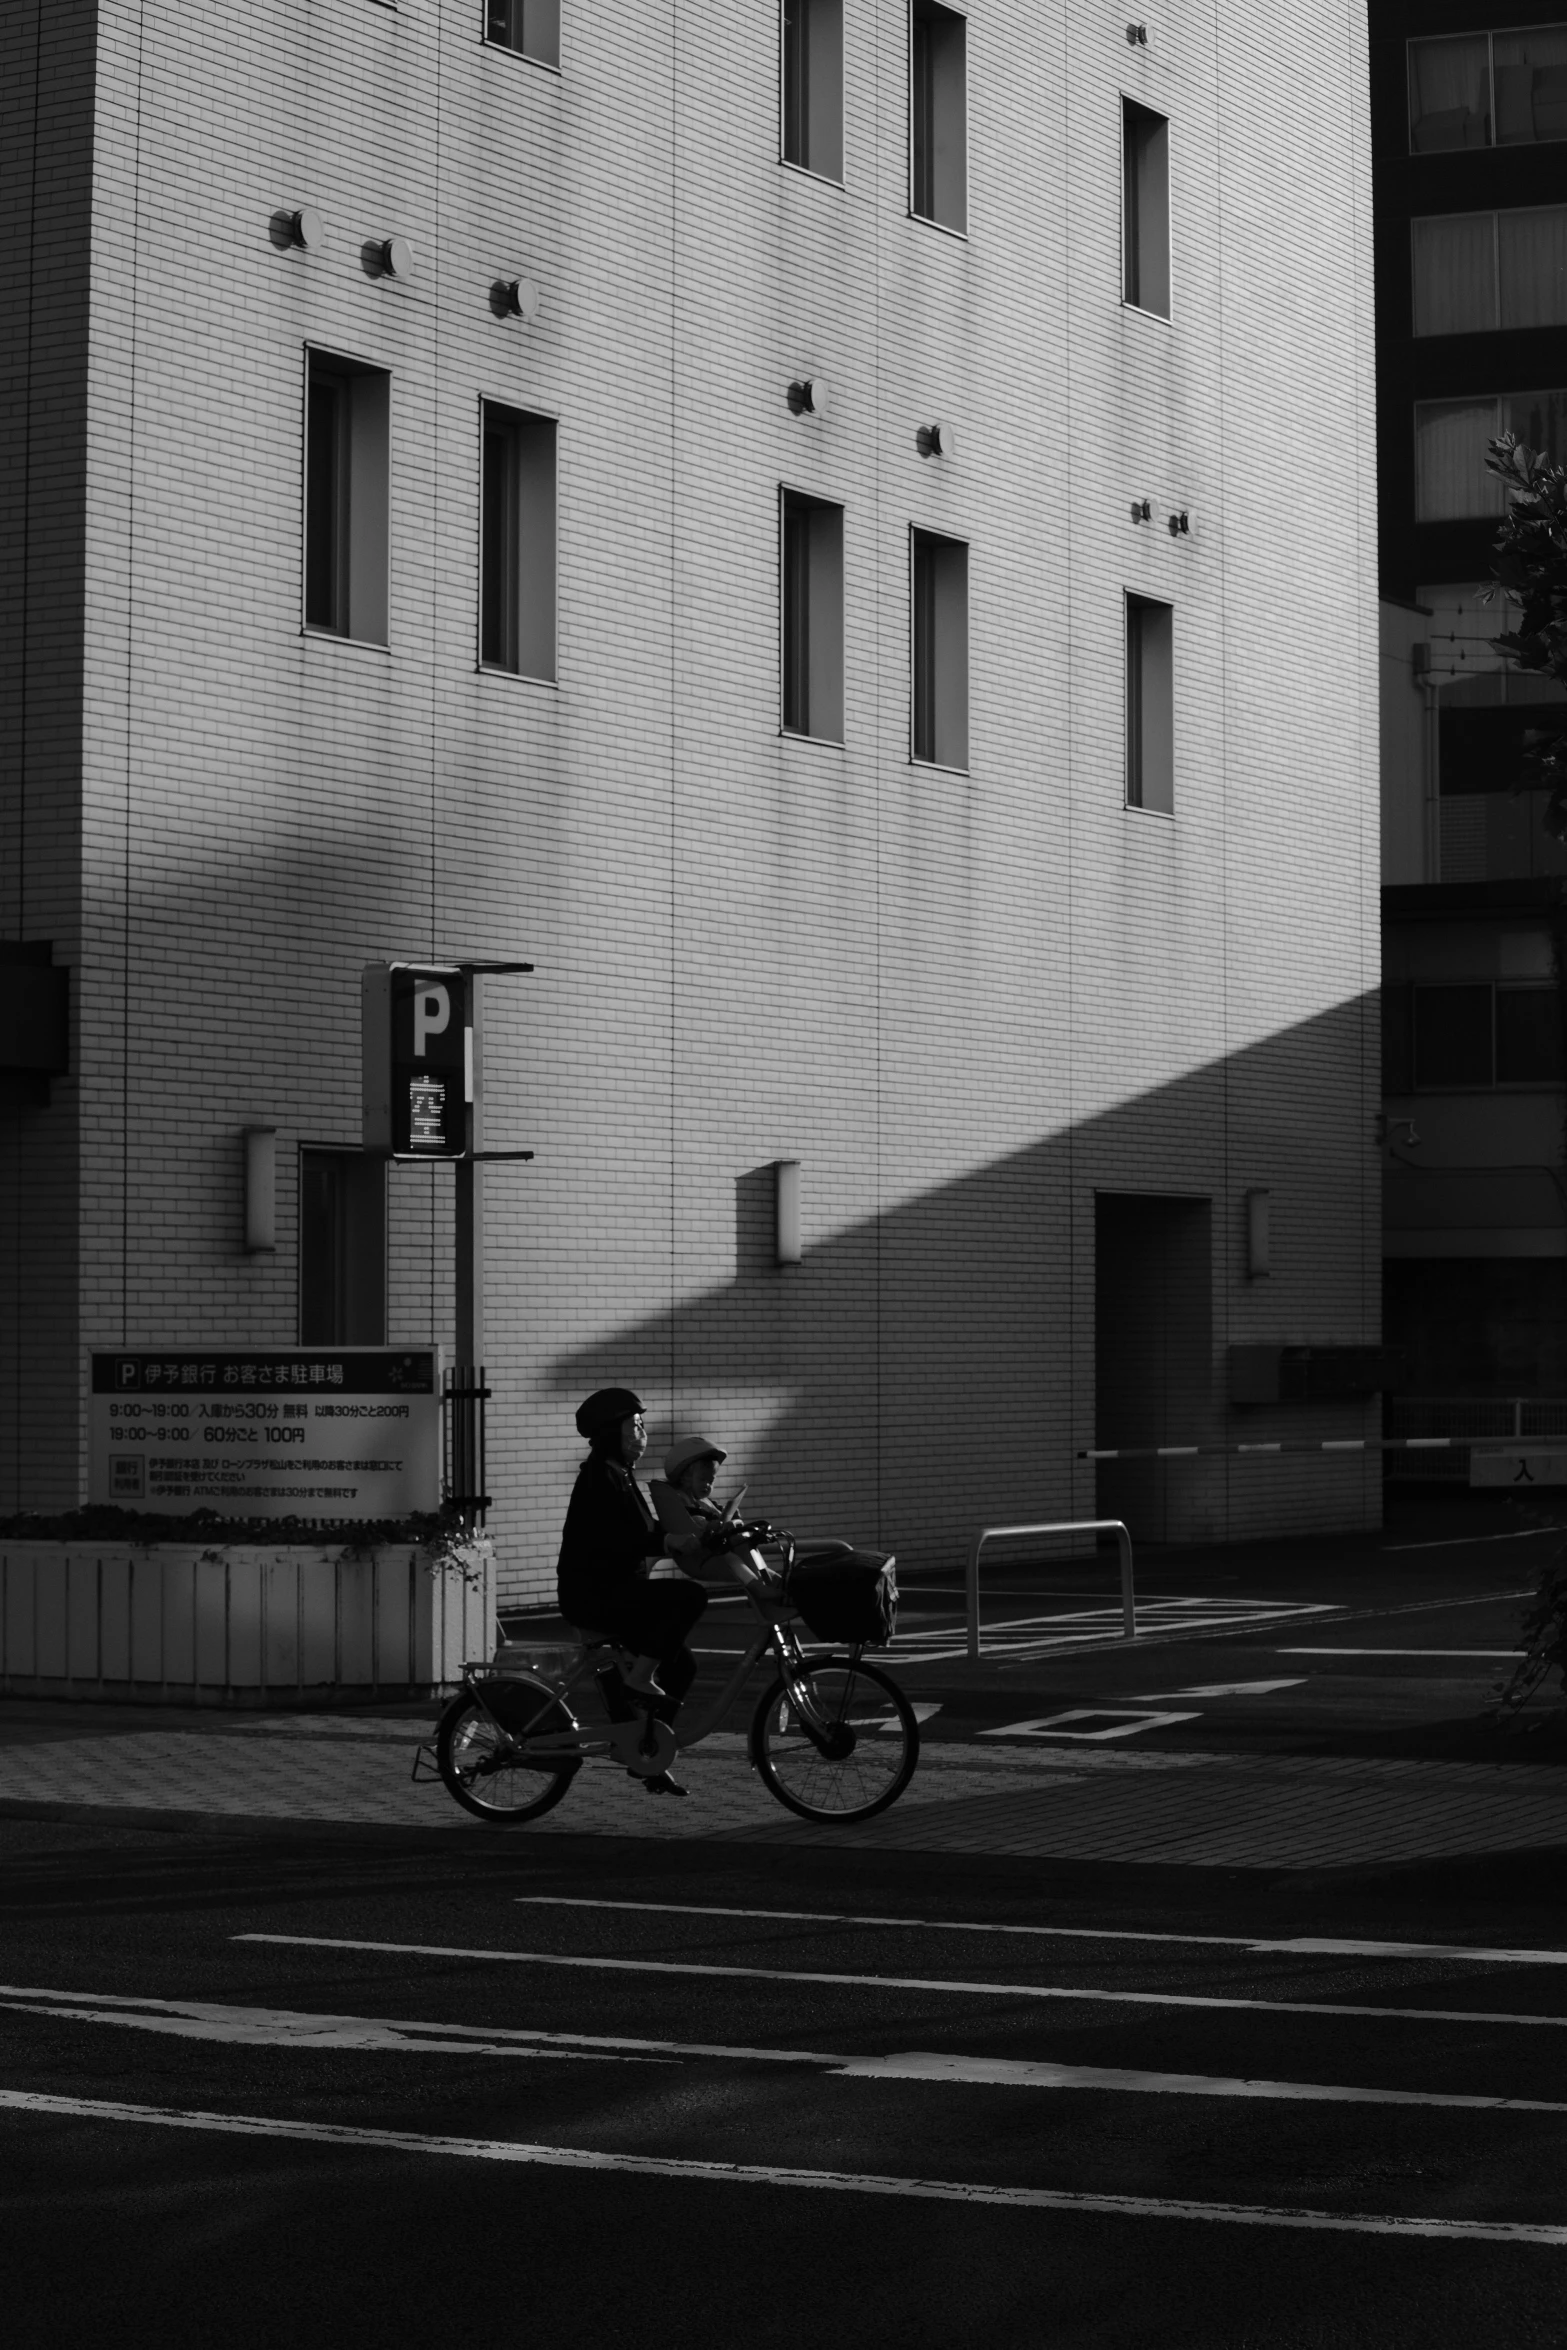 a man on a bike on a street